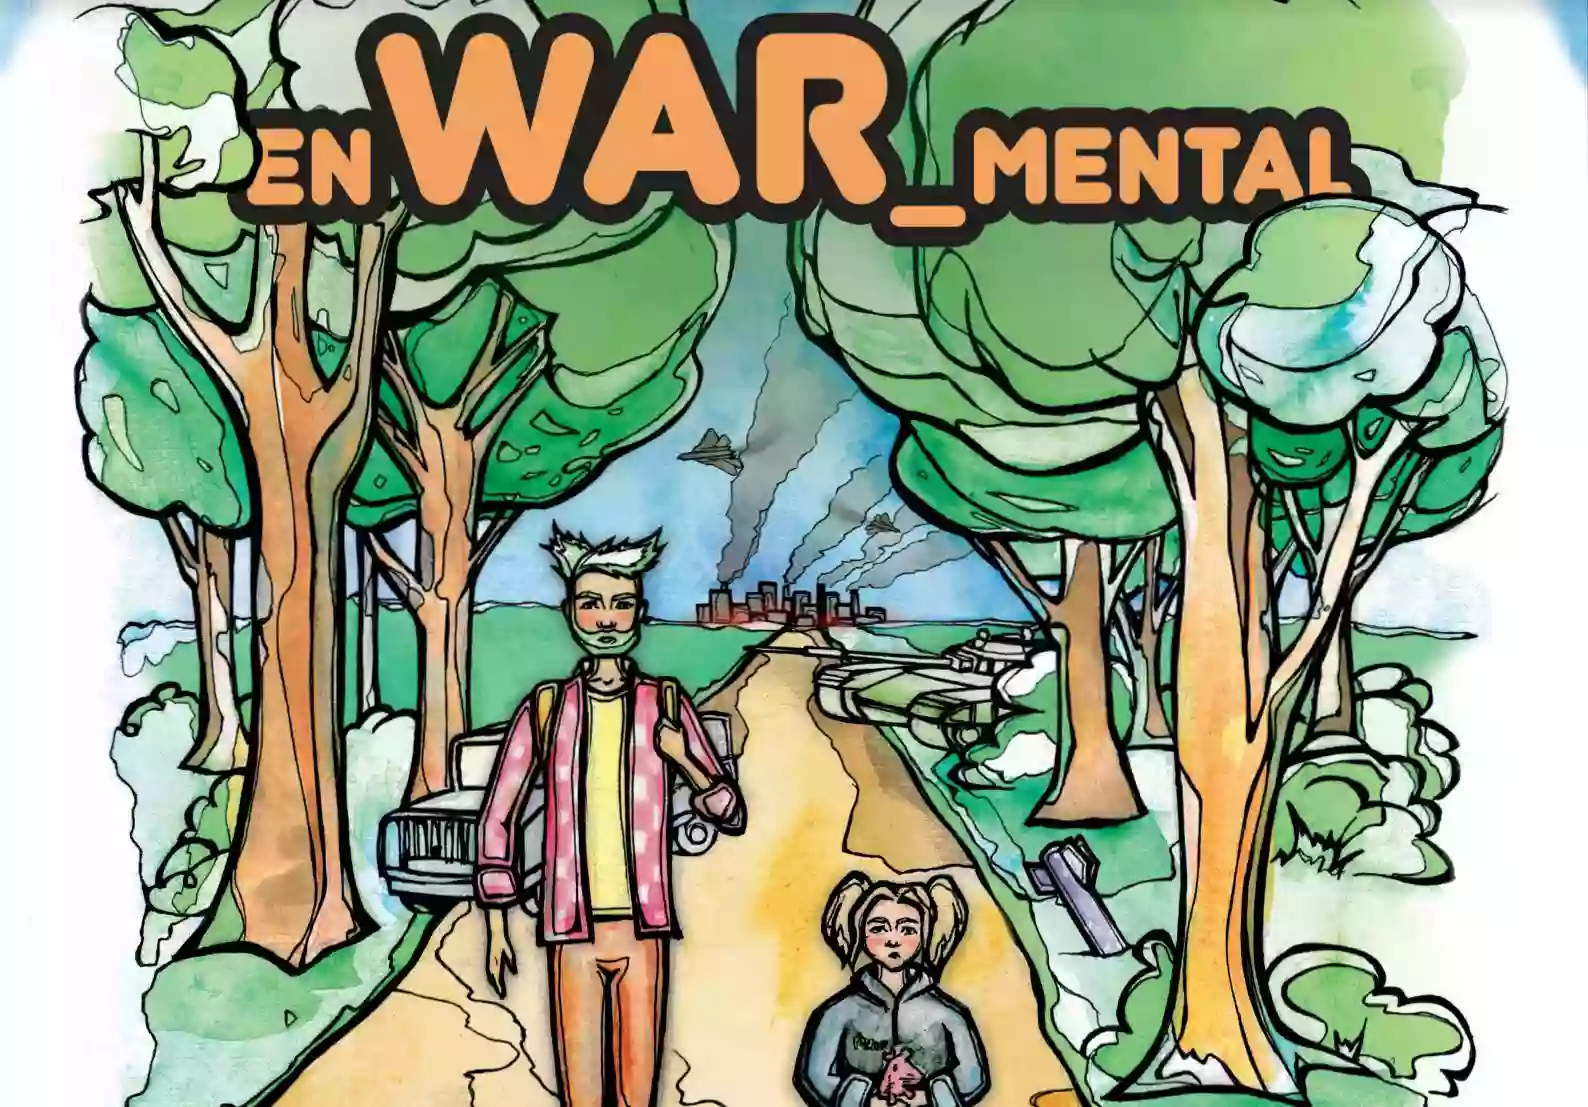 В Україні створили комікс про екологічні наслідки війни